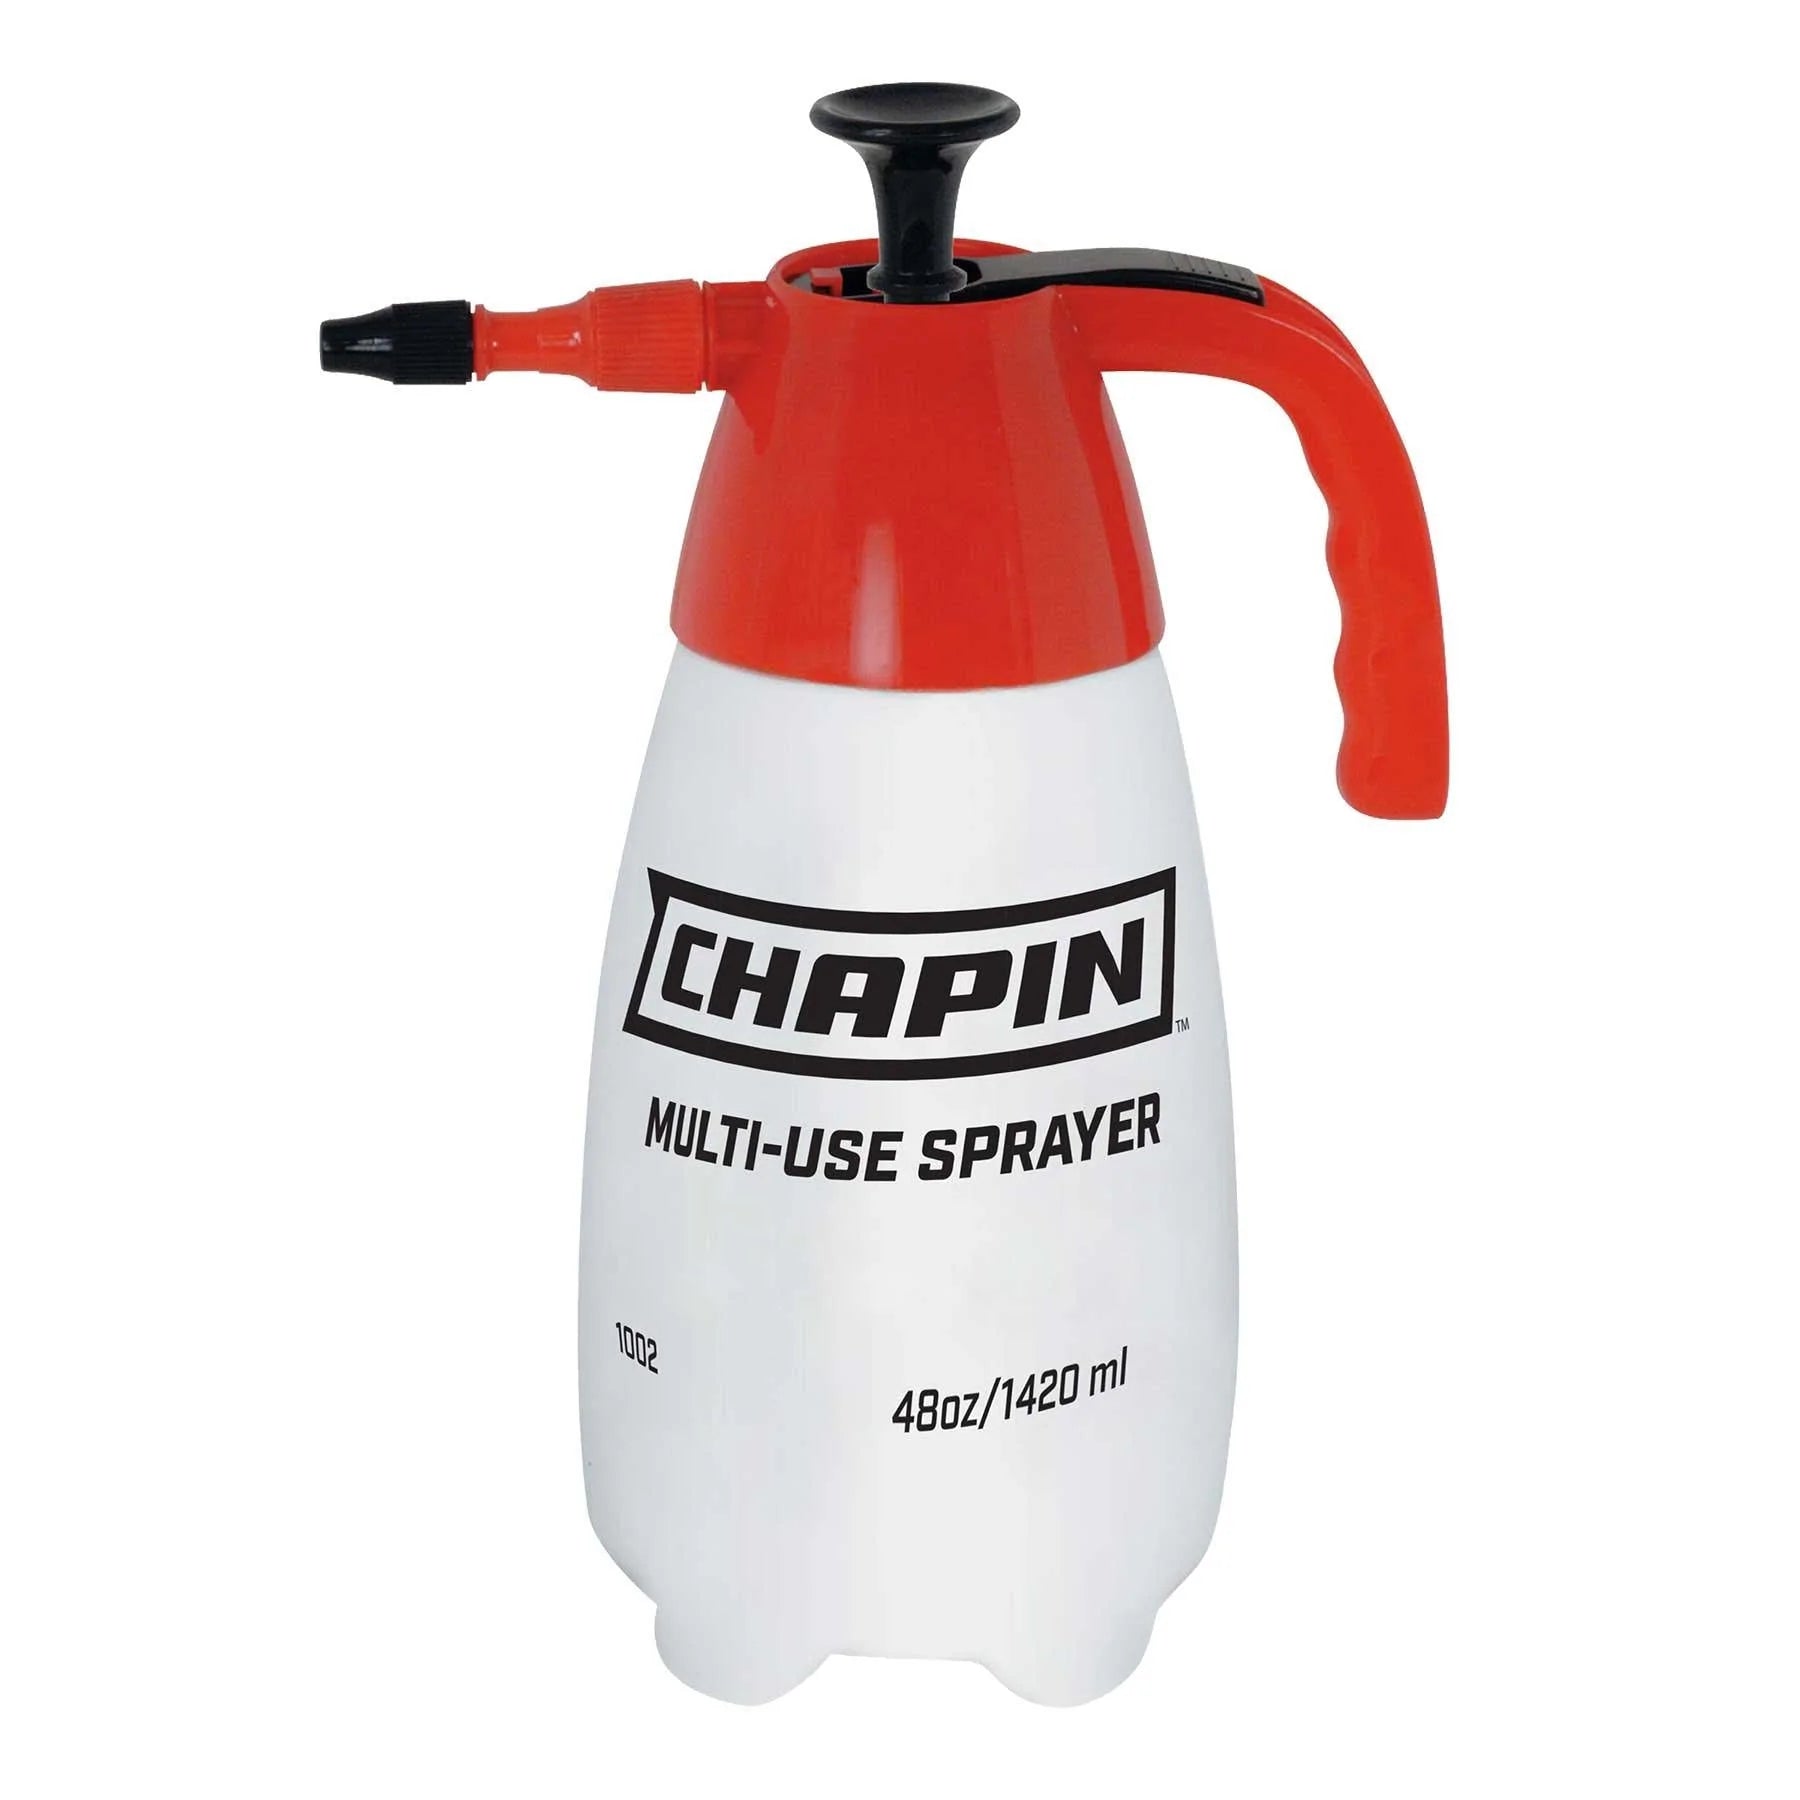 Chapin 48 oz Multi Purpose Sprayer